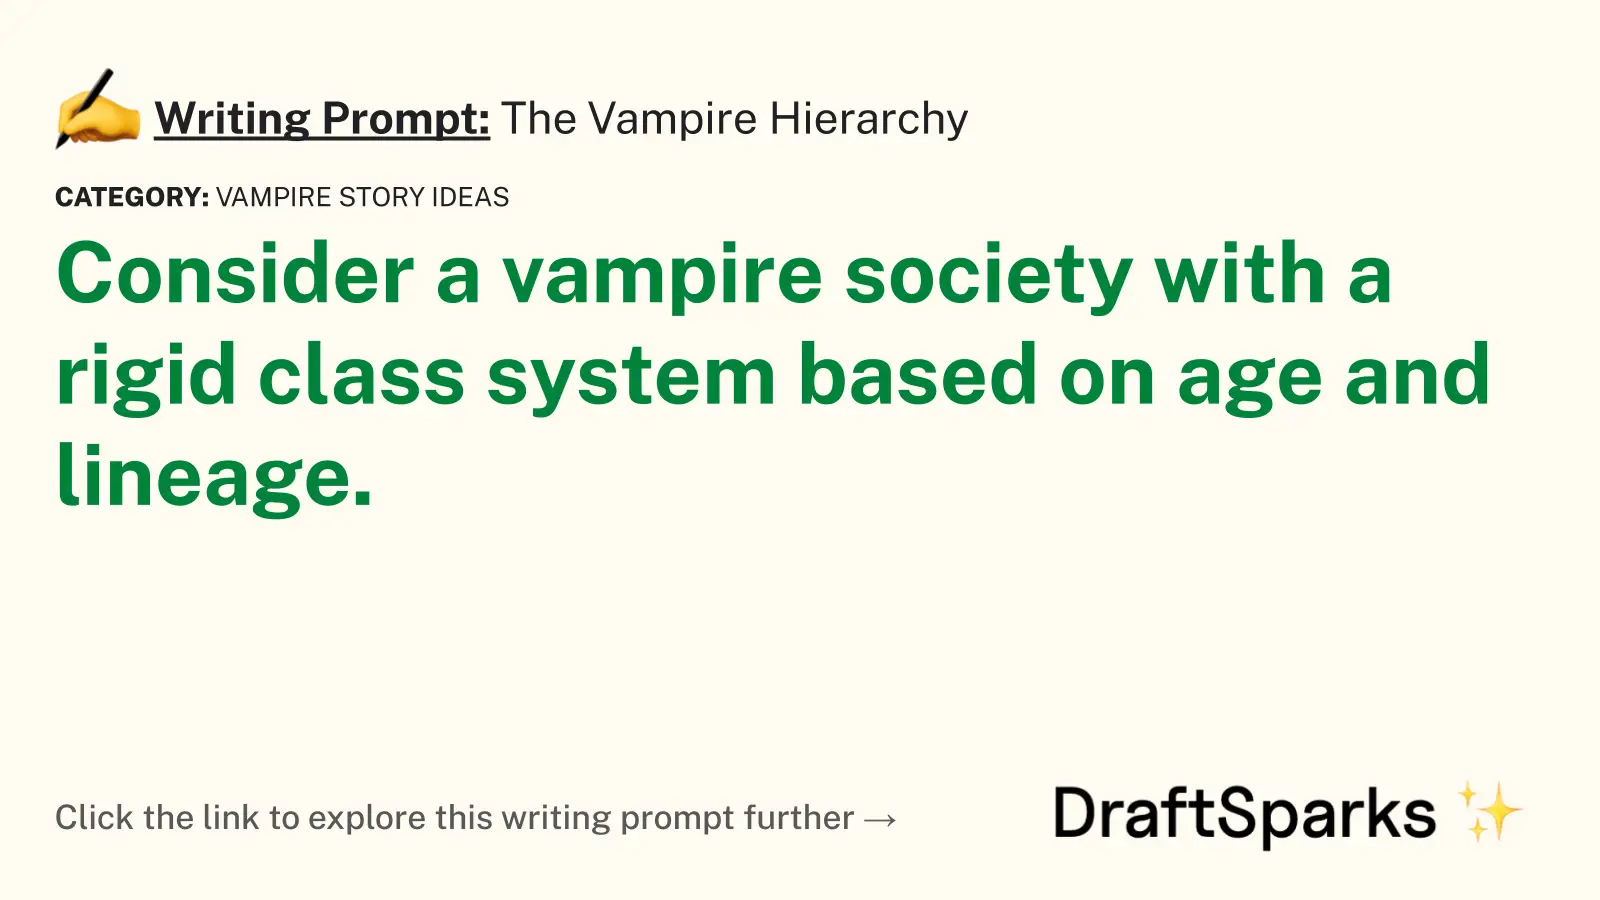 The Vampire Hierarchy